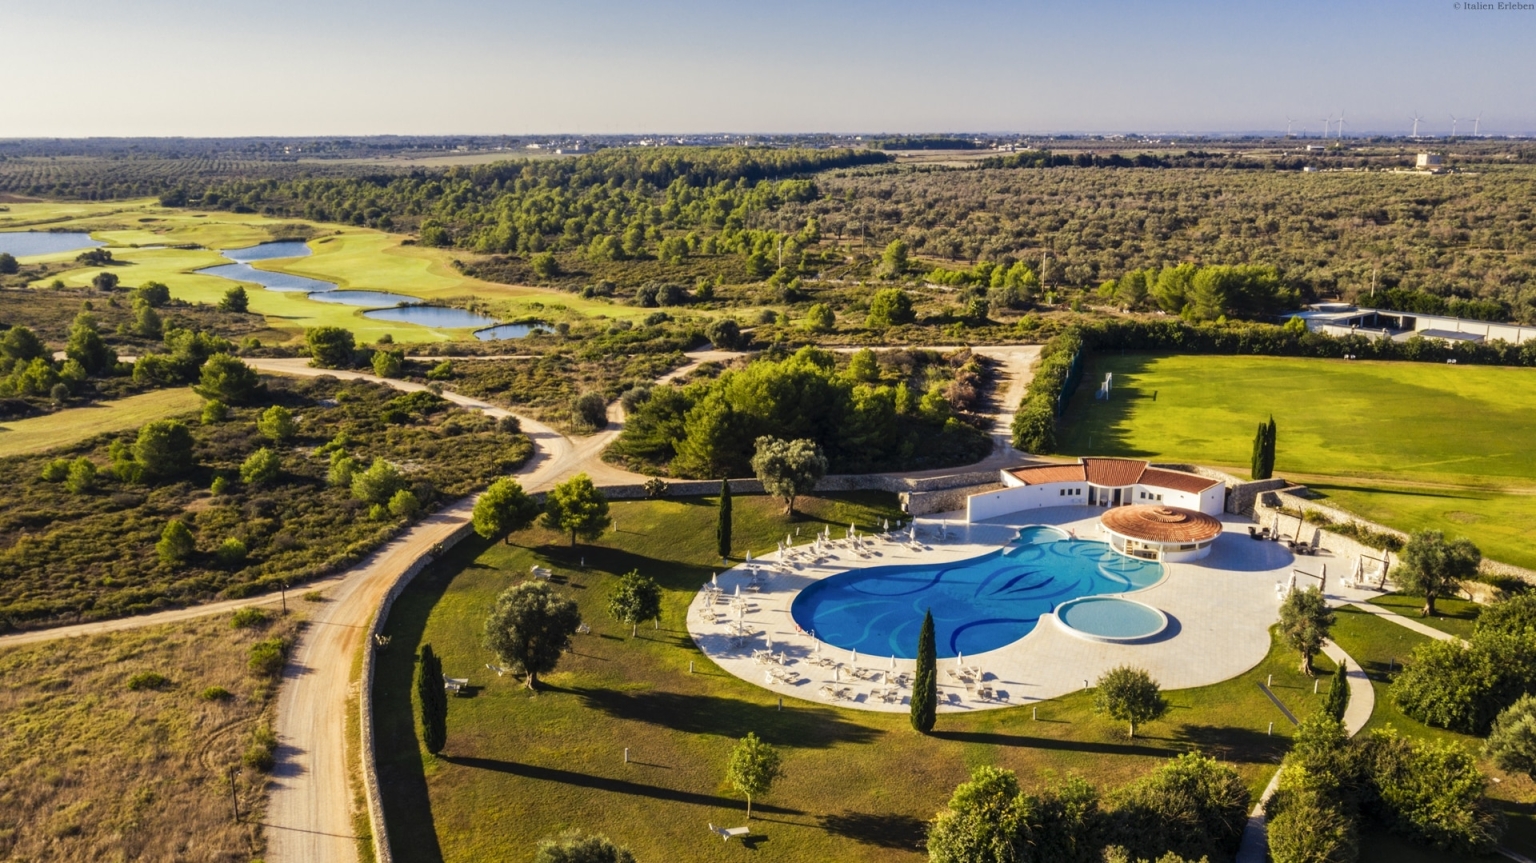 Apulien Golf Resort Acaya Lecce Salento 18 Loch Anlage modern Landschaft Wellness Außenansicht Panorama